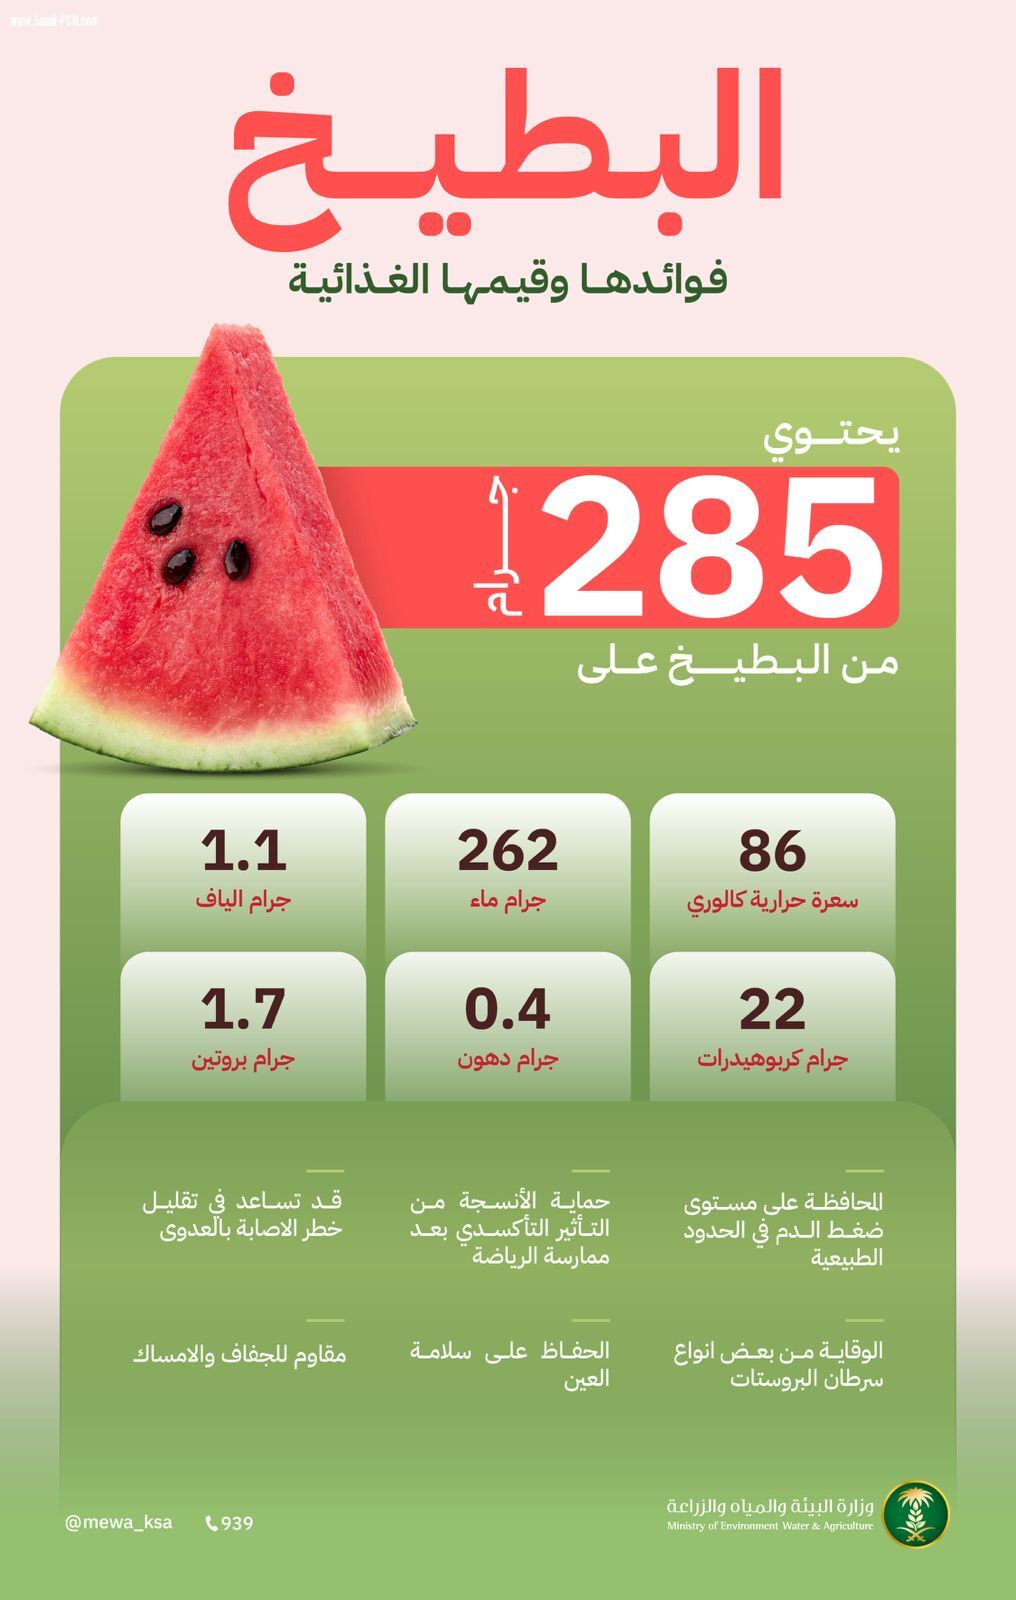 خطط محلية لرفع معدل إنتاج البطيخ لمجموعة فوائدة الغذائية